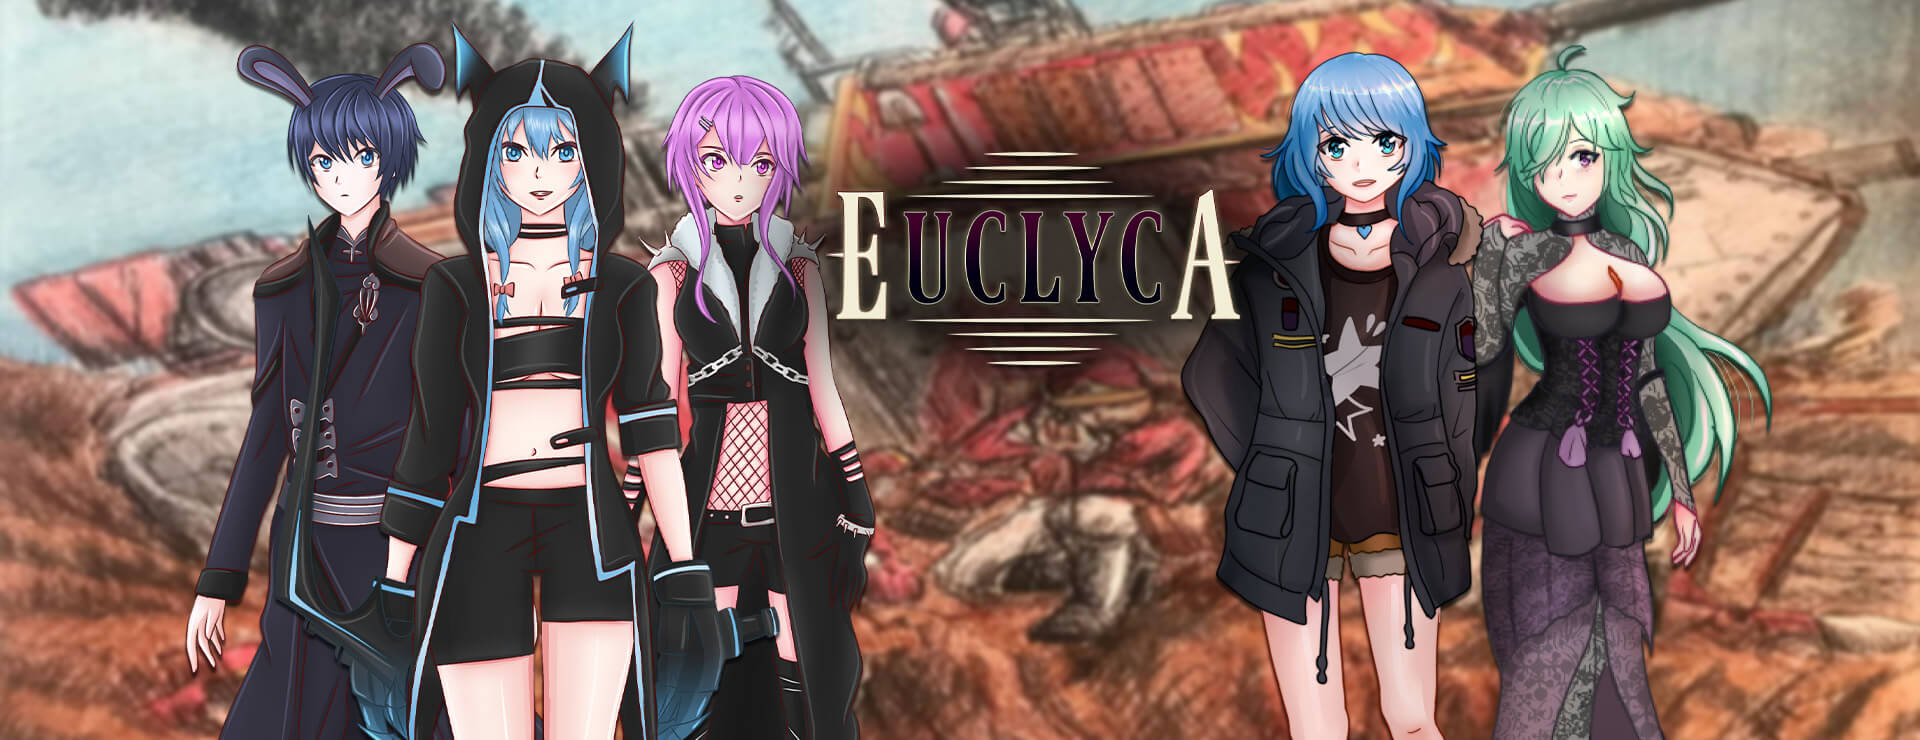 Euclyca - RPG Juego